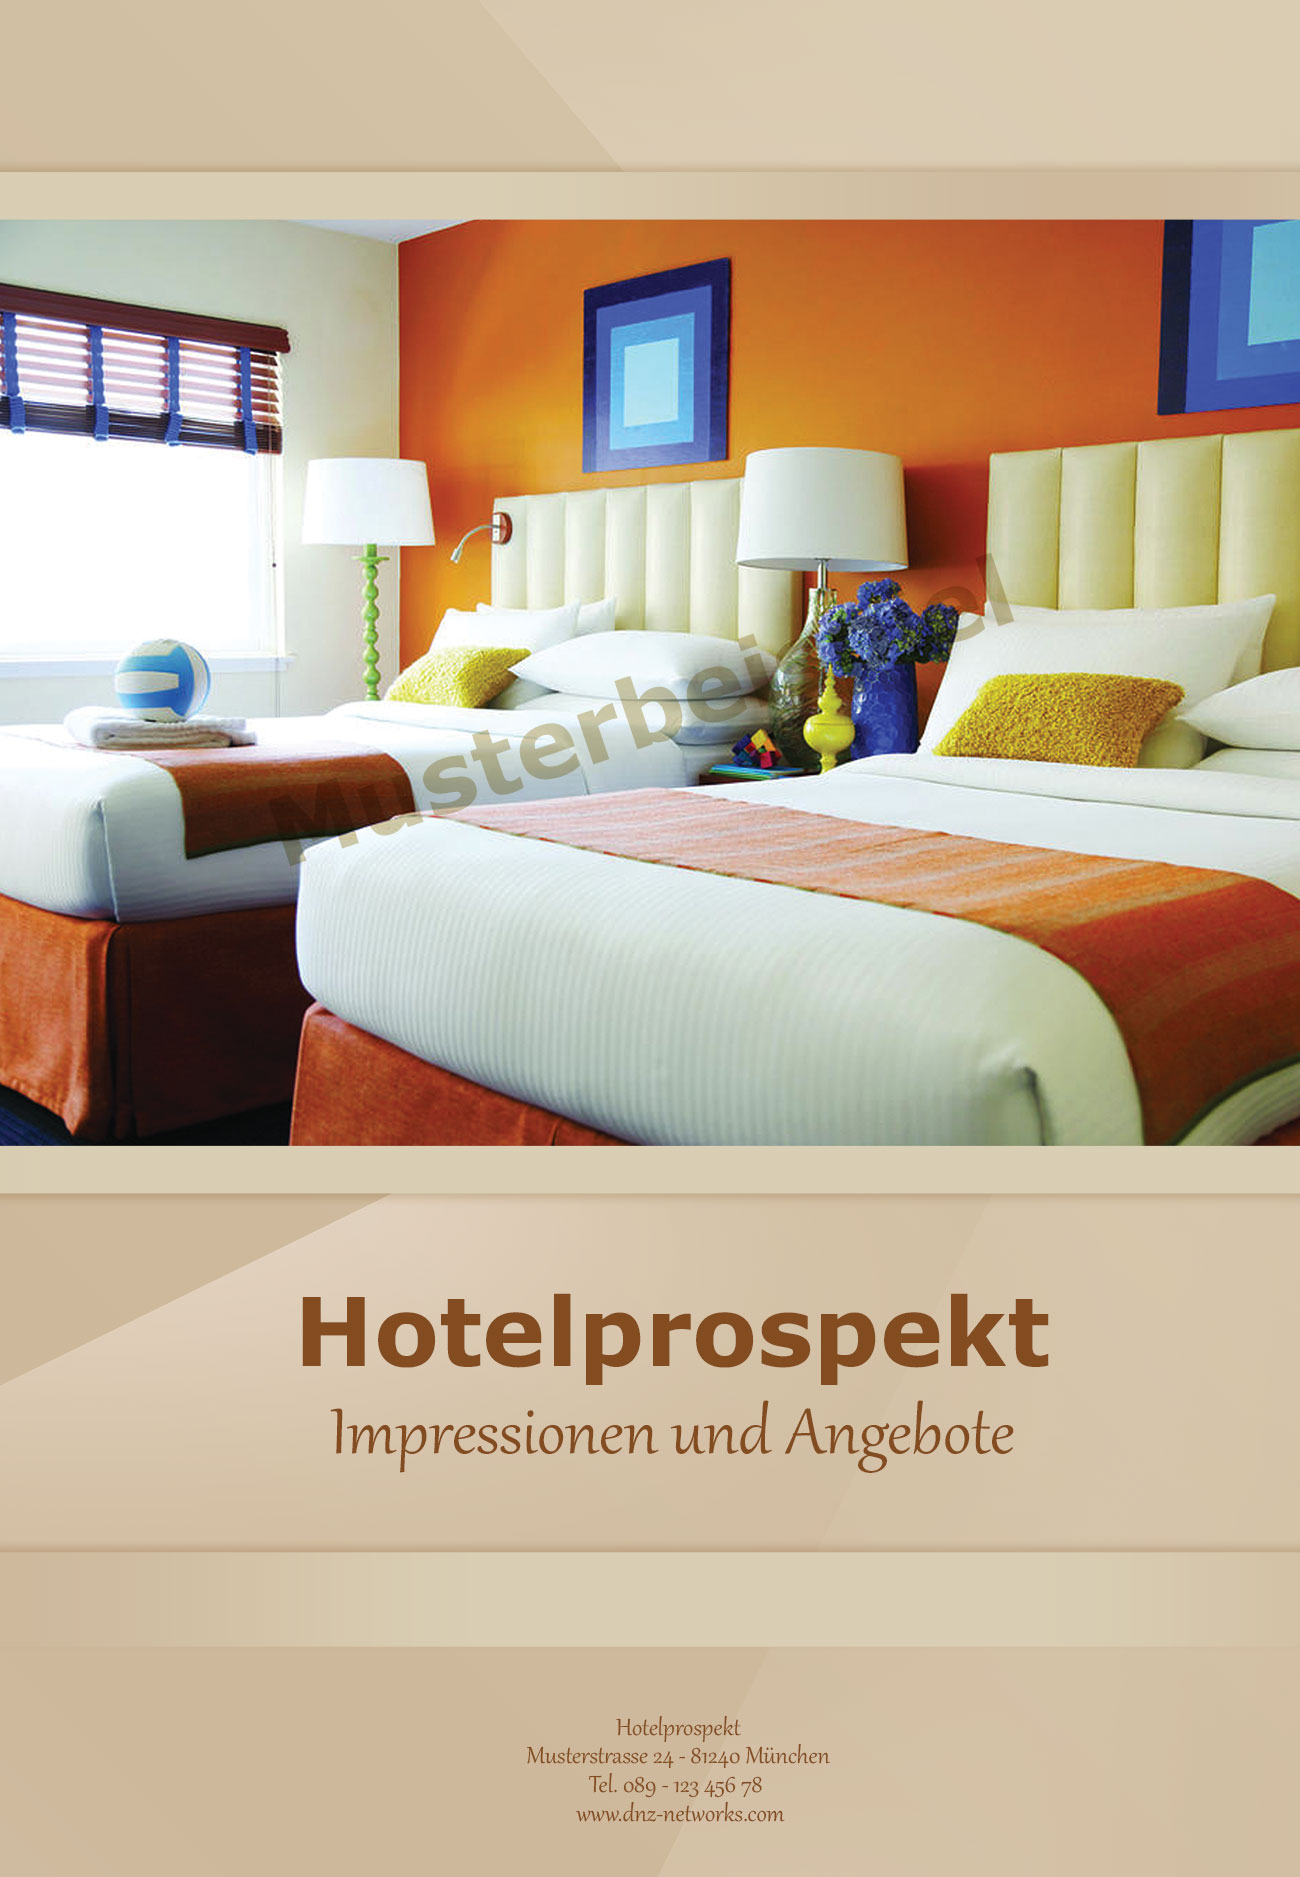 Hotelprospekt-Hotel-Grafikdesign-Tourismus-Branche-Hotel-Pension-DNZ-Networks